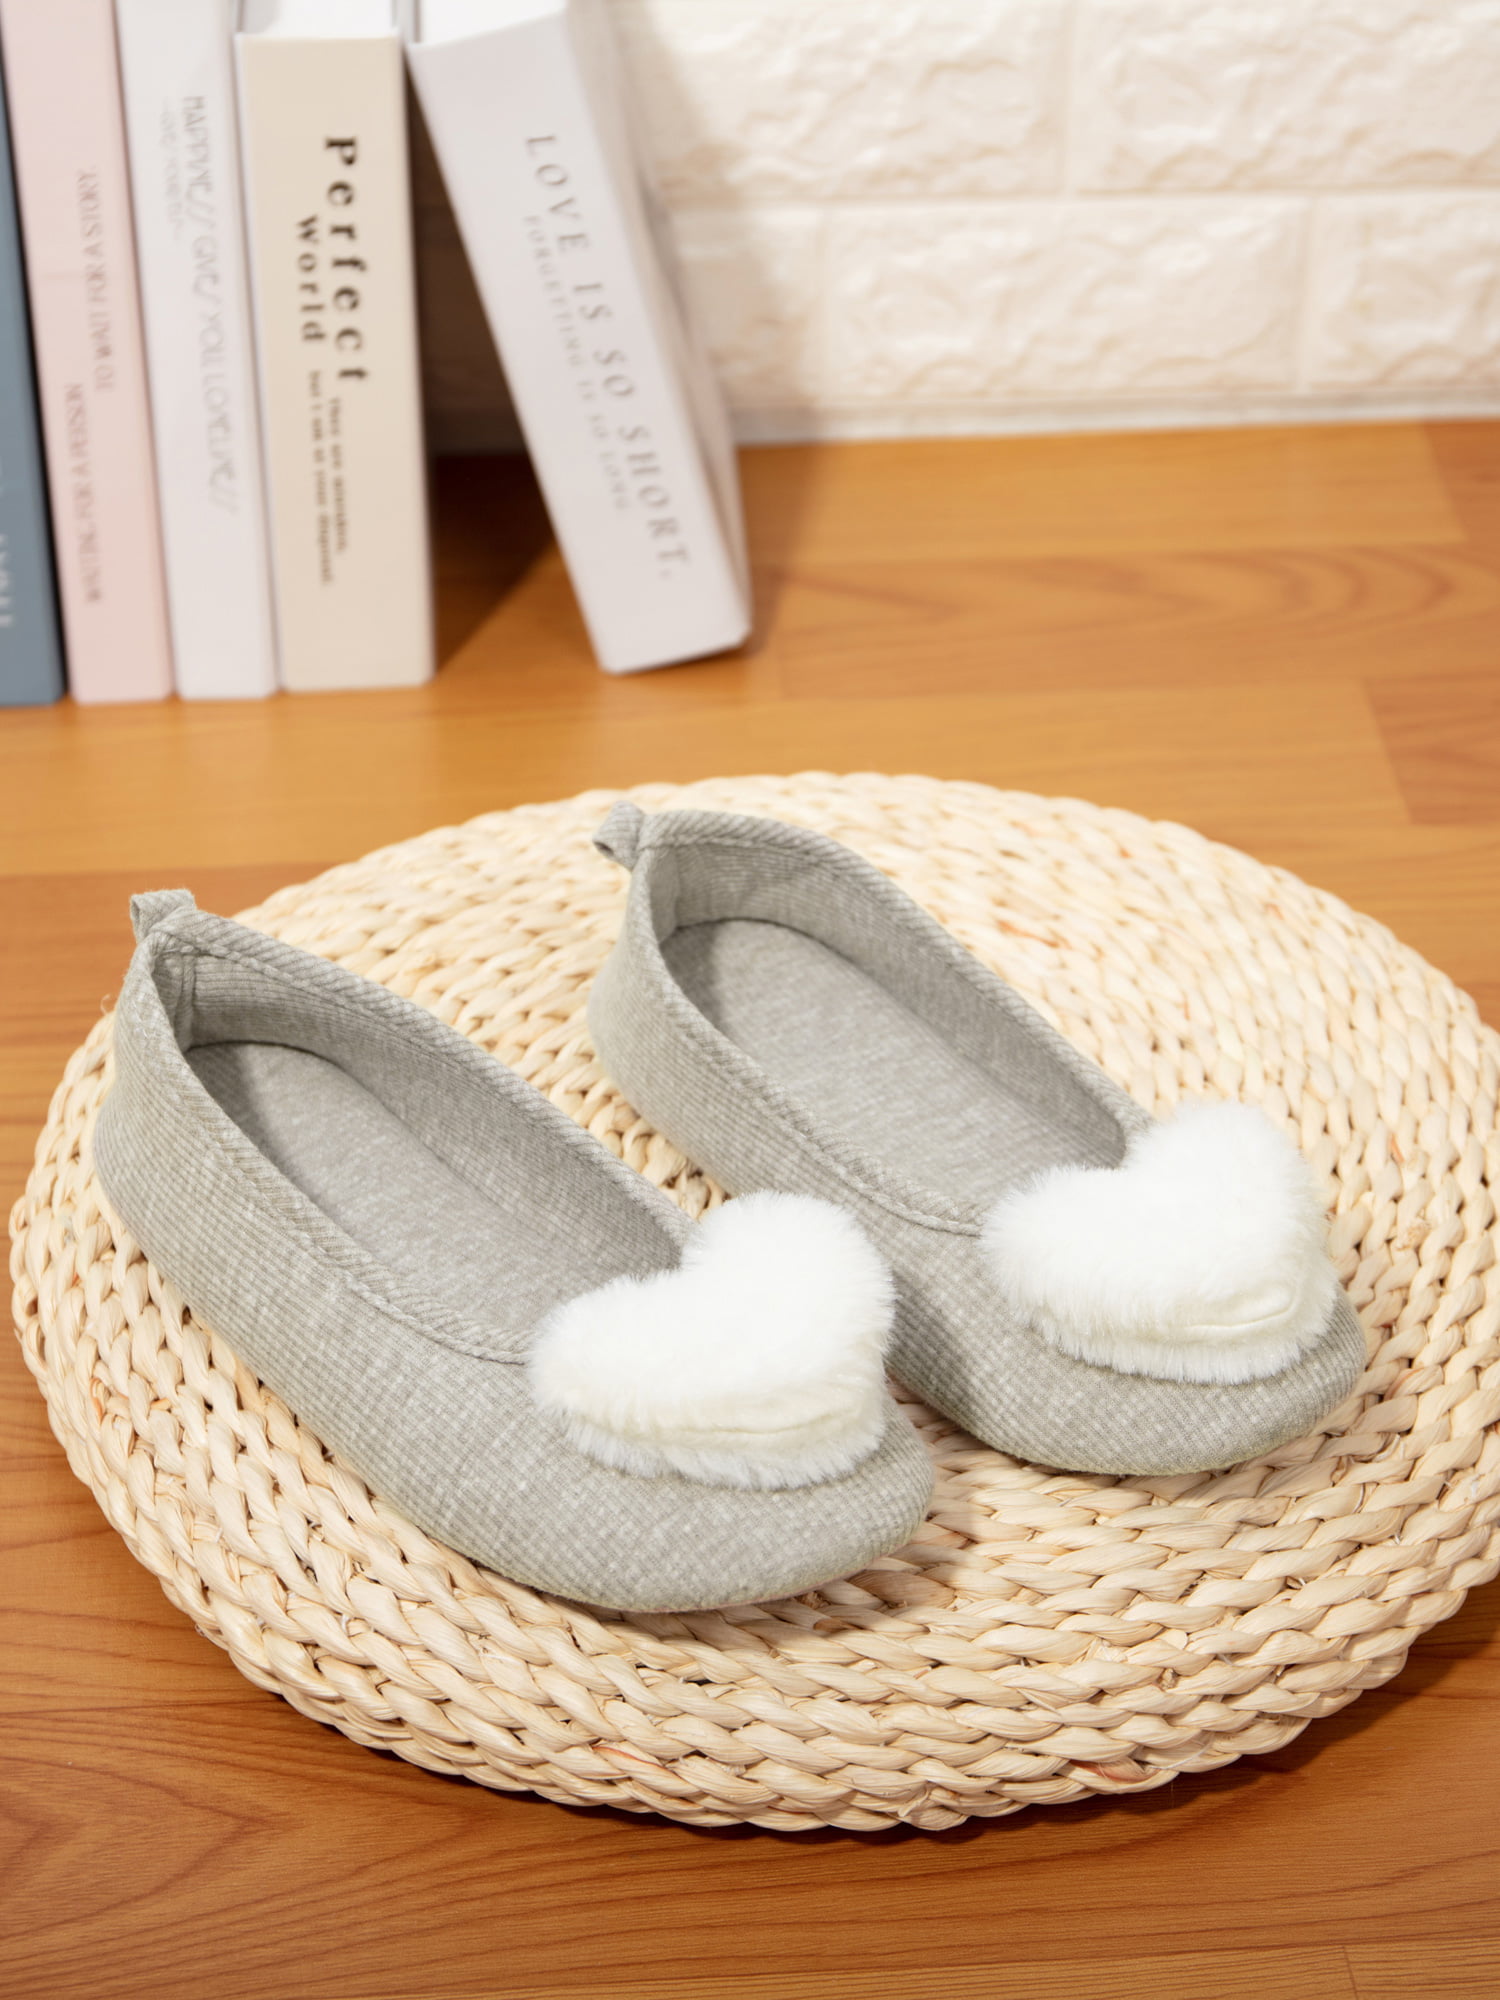 outdoor winter slippers